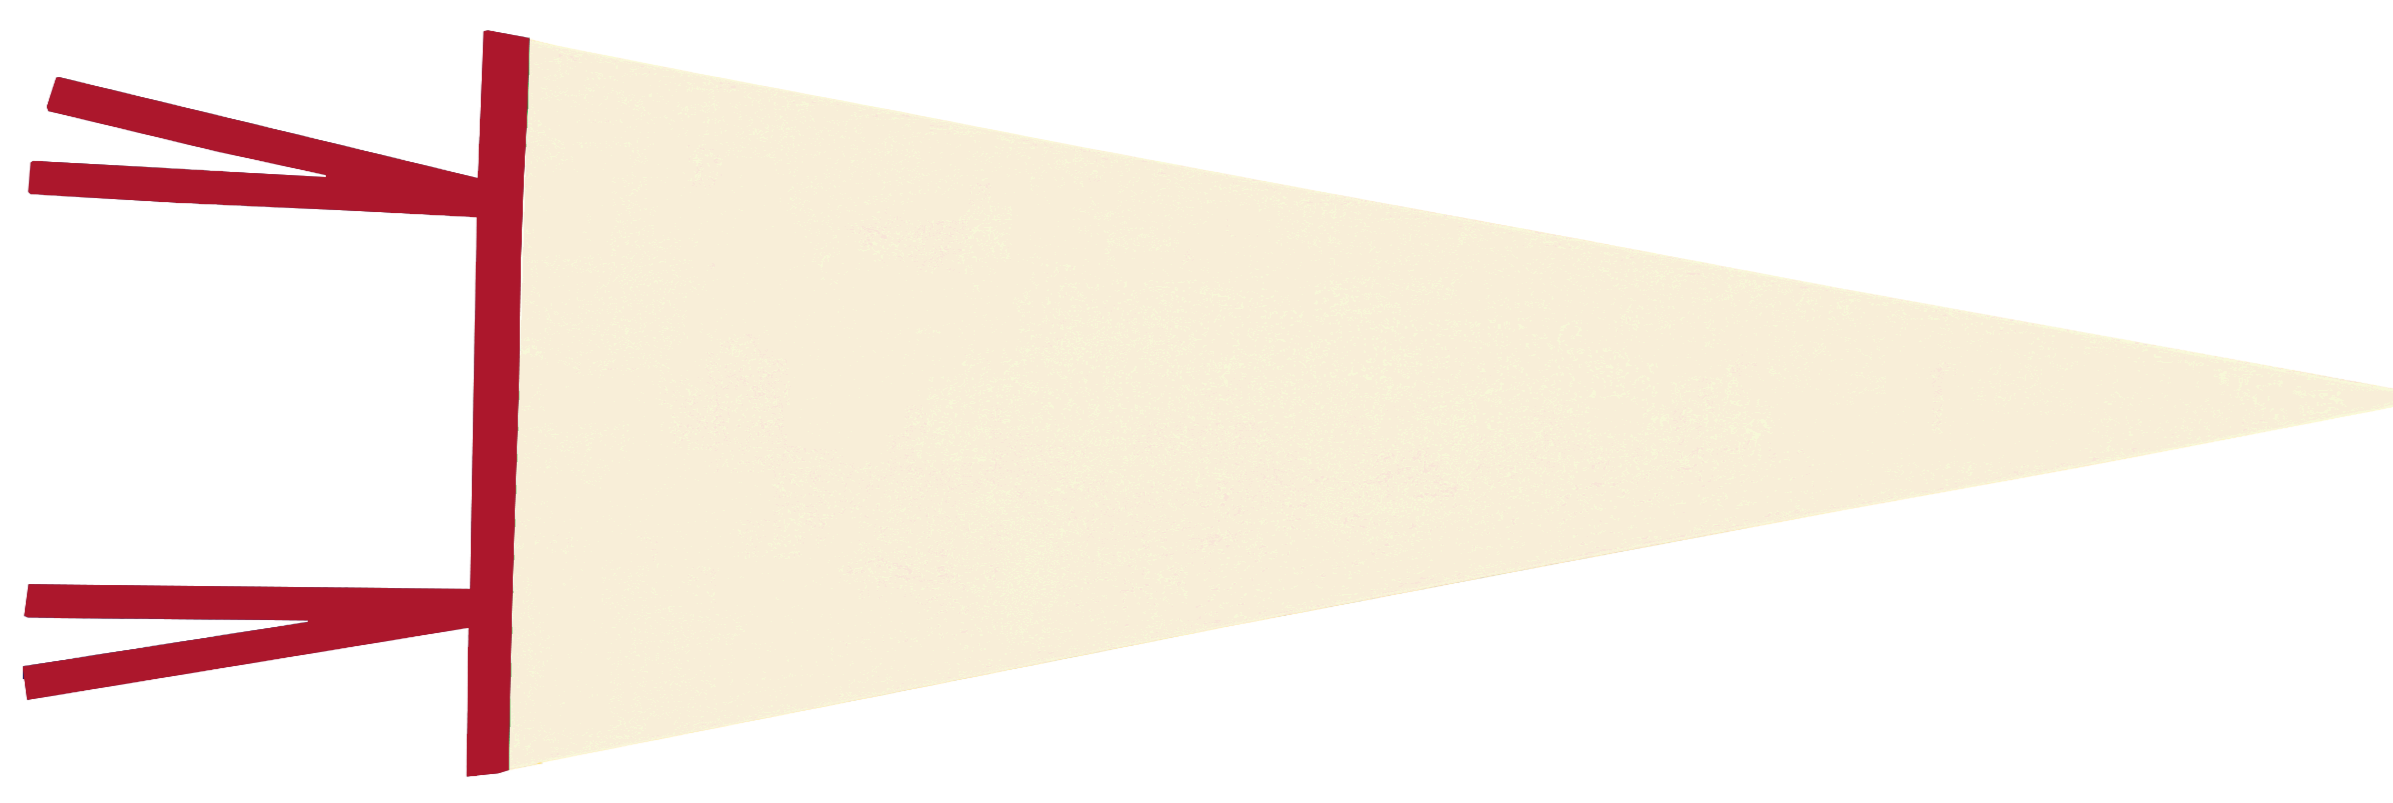 blank pennant clipart